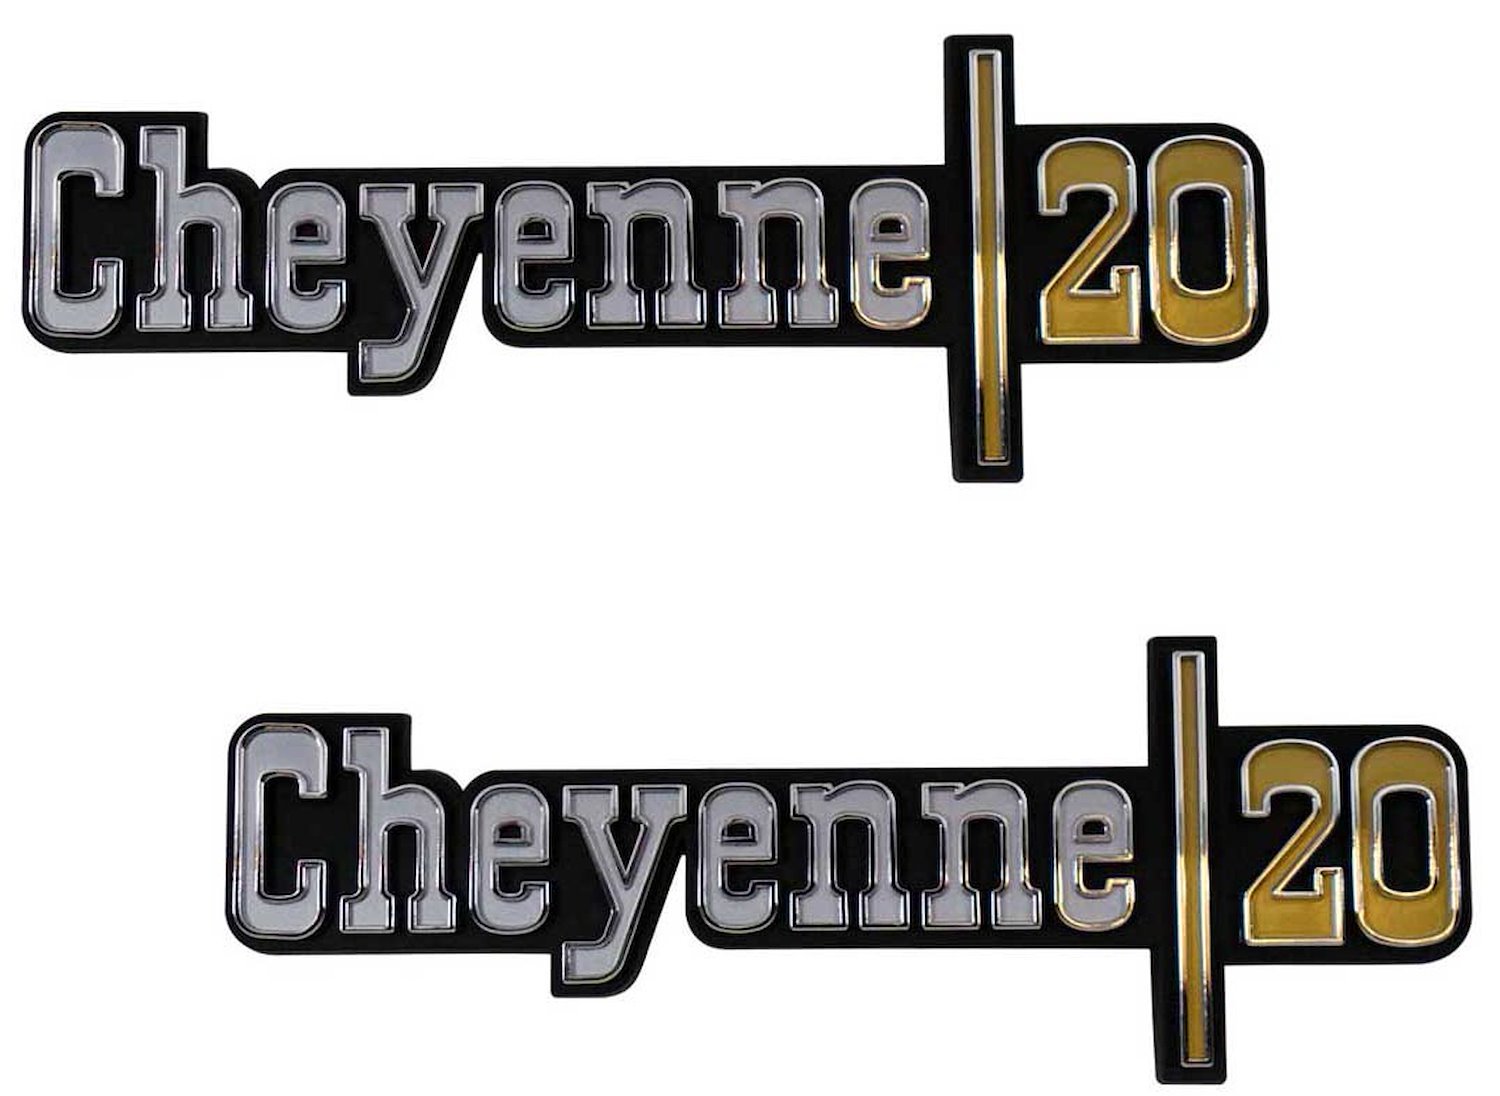 Front Fender Emblem Set 1973-1974 Chevy Cheyenne 3/4 Ton - "Cheyenne 20"